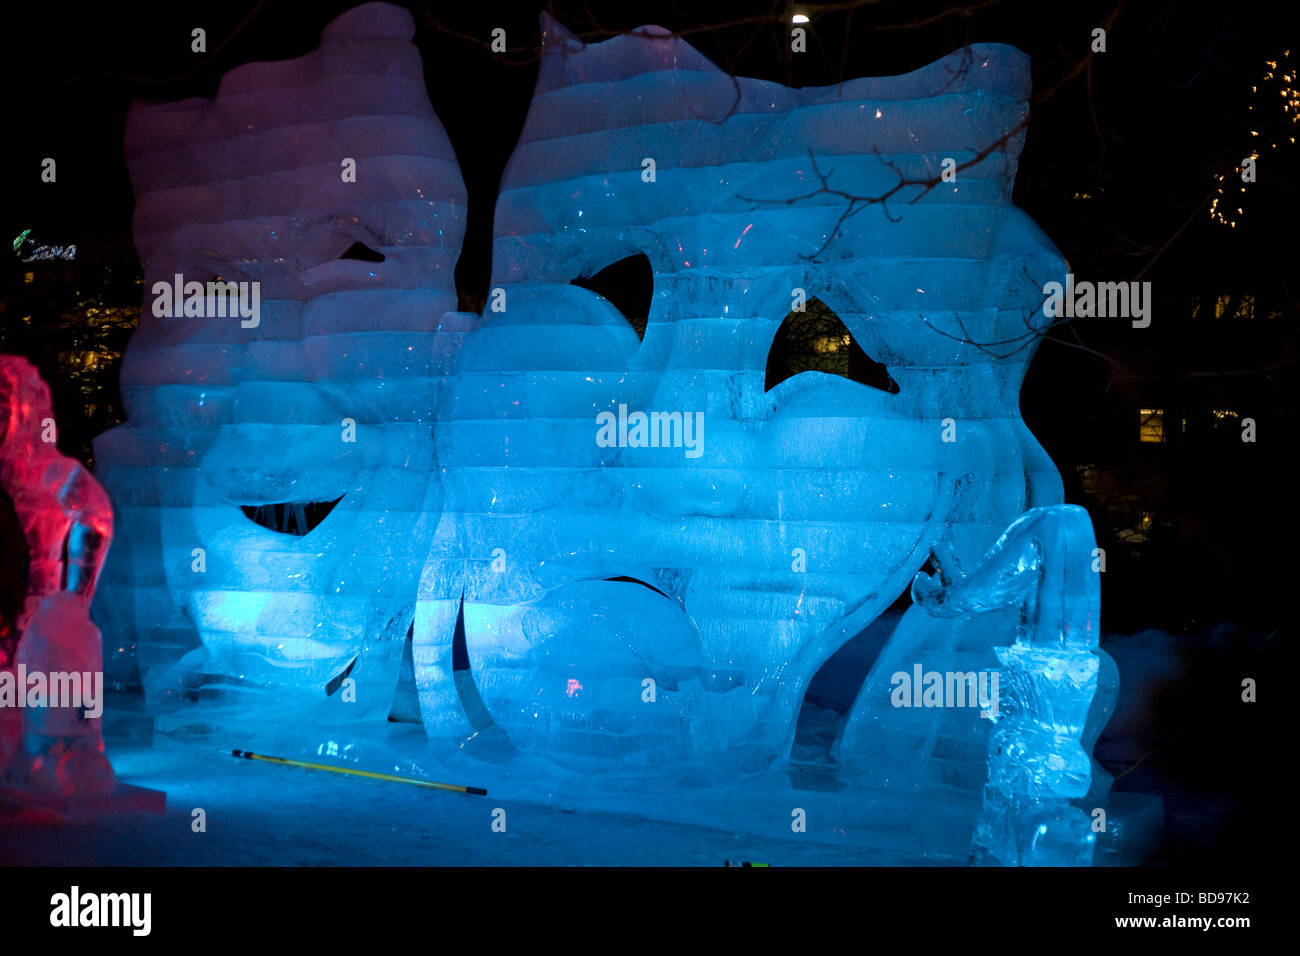 La commedia e la Tragedia di ghiaccio. Una scultura di ghiaccio delle famose maschere di notte, Retroilluminato con LED blu. Foto Stock